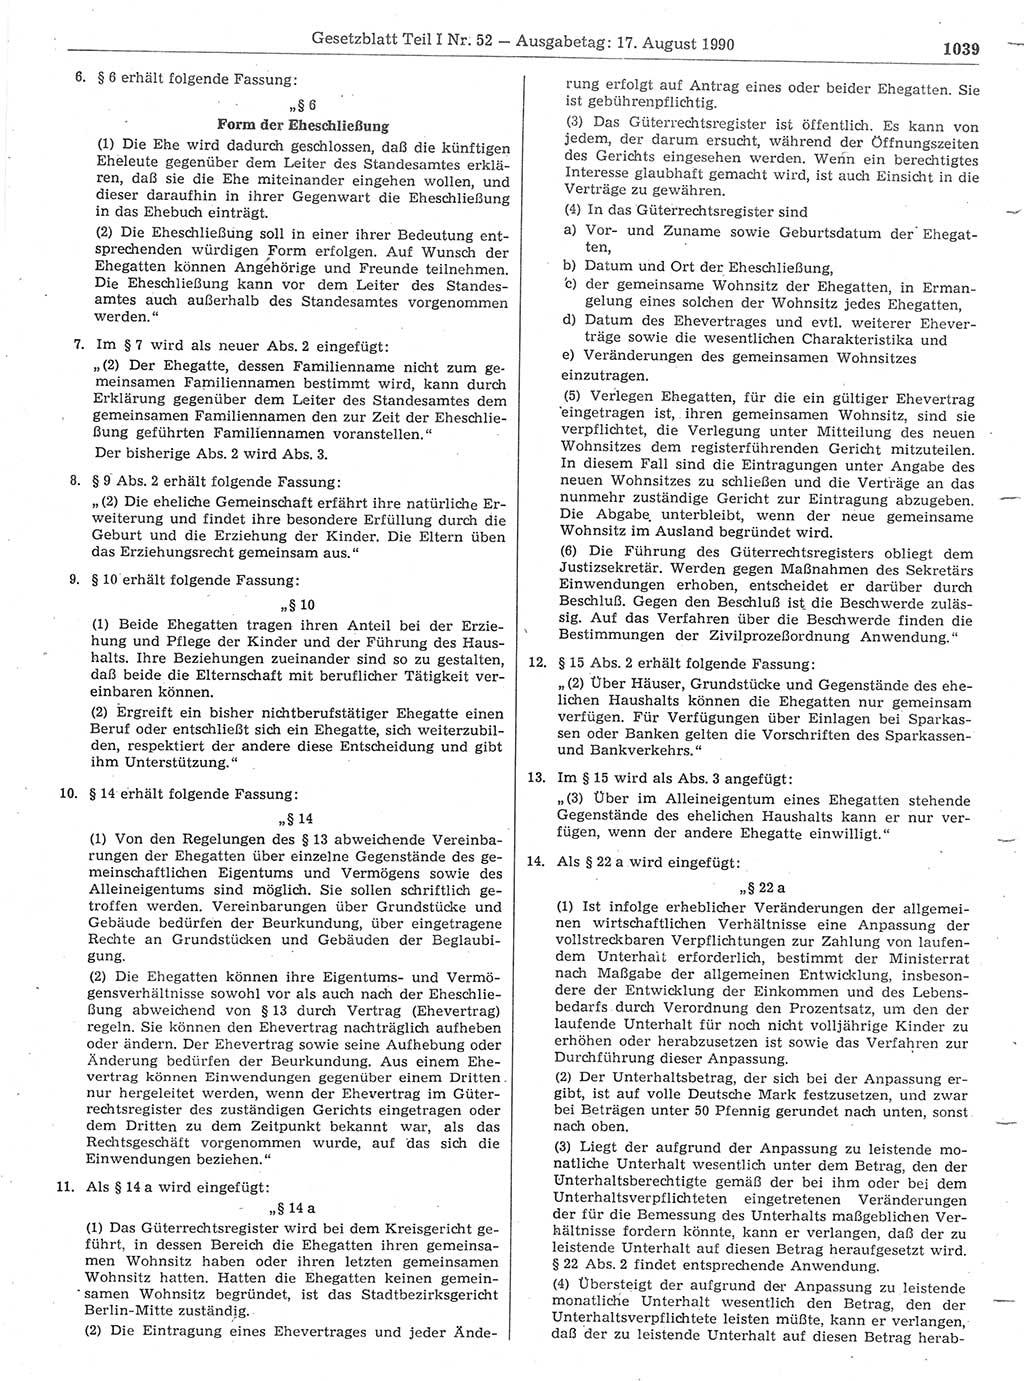 Gesetzblatt (GBl.) der Deutschen Demokratischen Republik (DDR) Teil Ⅰ 1990, Seite 1039 (GBl. DDR Ⅰ 1990, S. 1039)